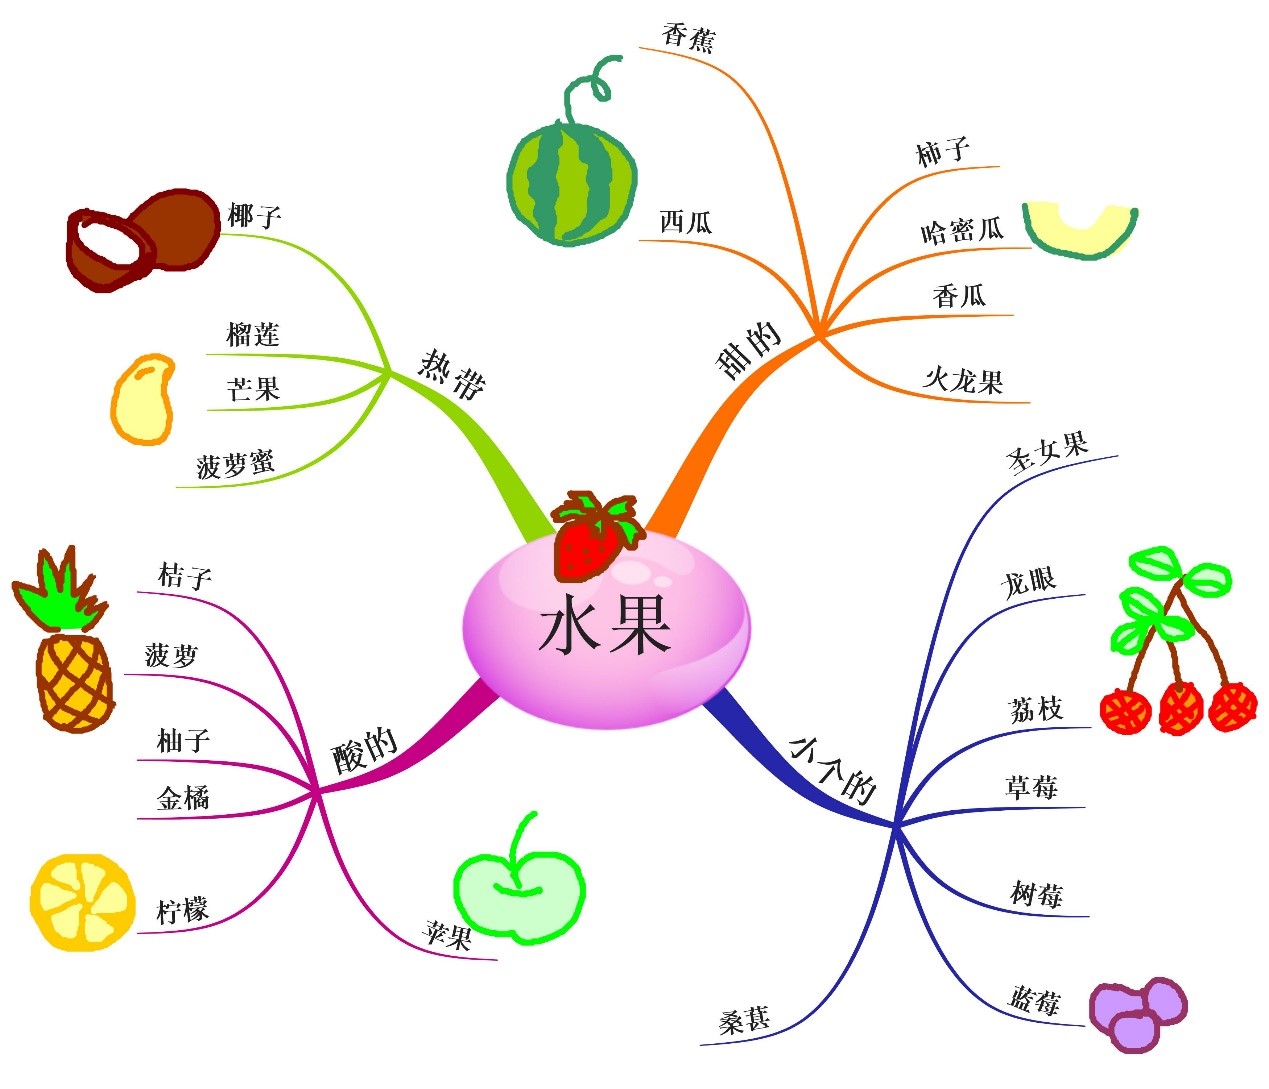 水果主题网络图设计图片